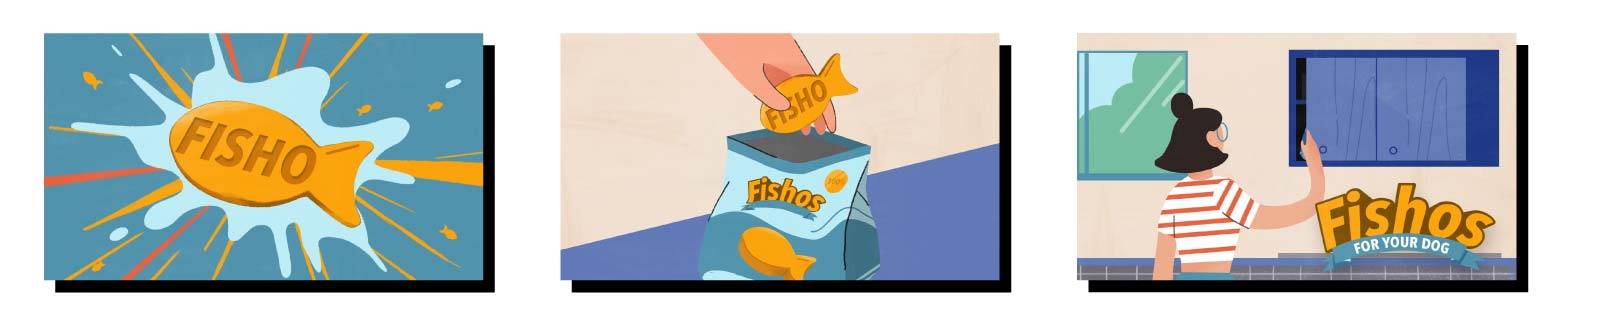 Un primo piano di uno snack Fisho sopra spruzzi d'acqua è seguito da uno scatto in situ di una mano che entra in una confezione di Fishos e ne estrae uno. Nell'ultimo fotogramma, una donna apre un mobiletto da cucina. Il logo Fishos viene mostrato in sovr